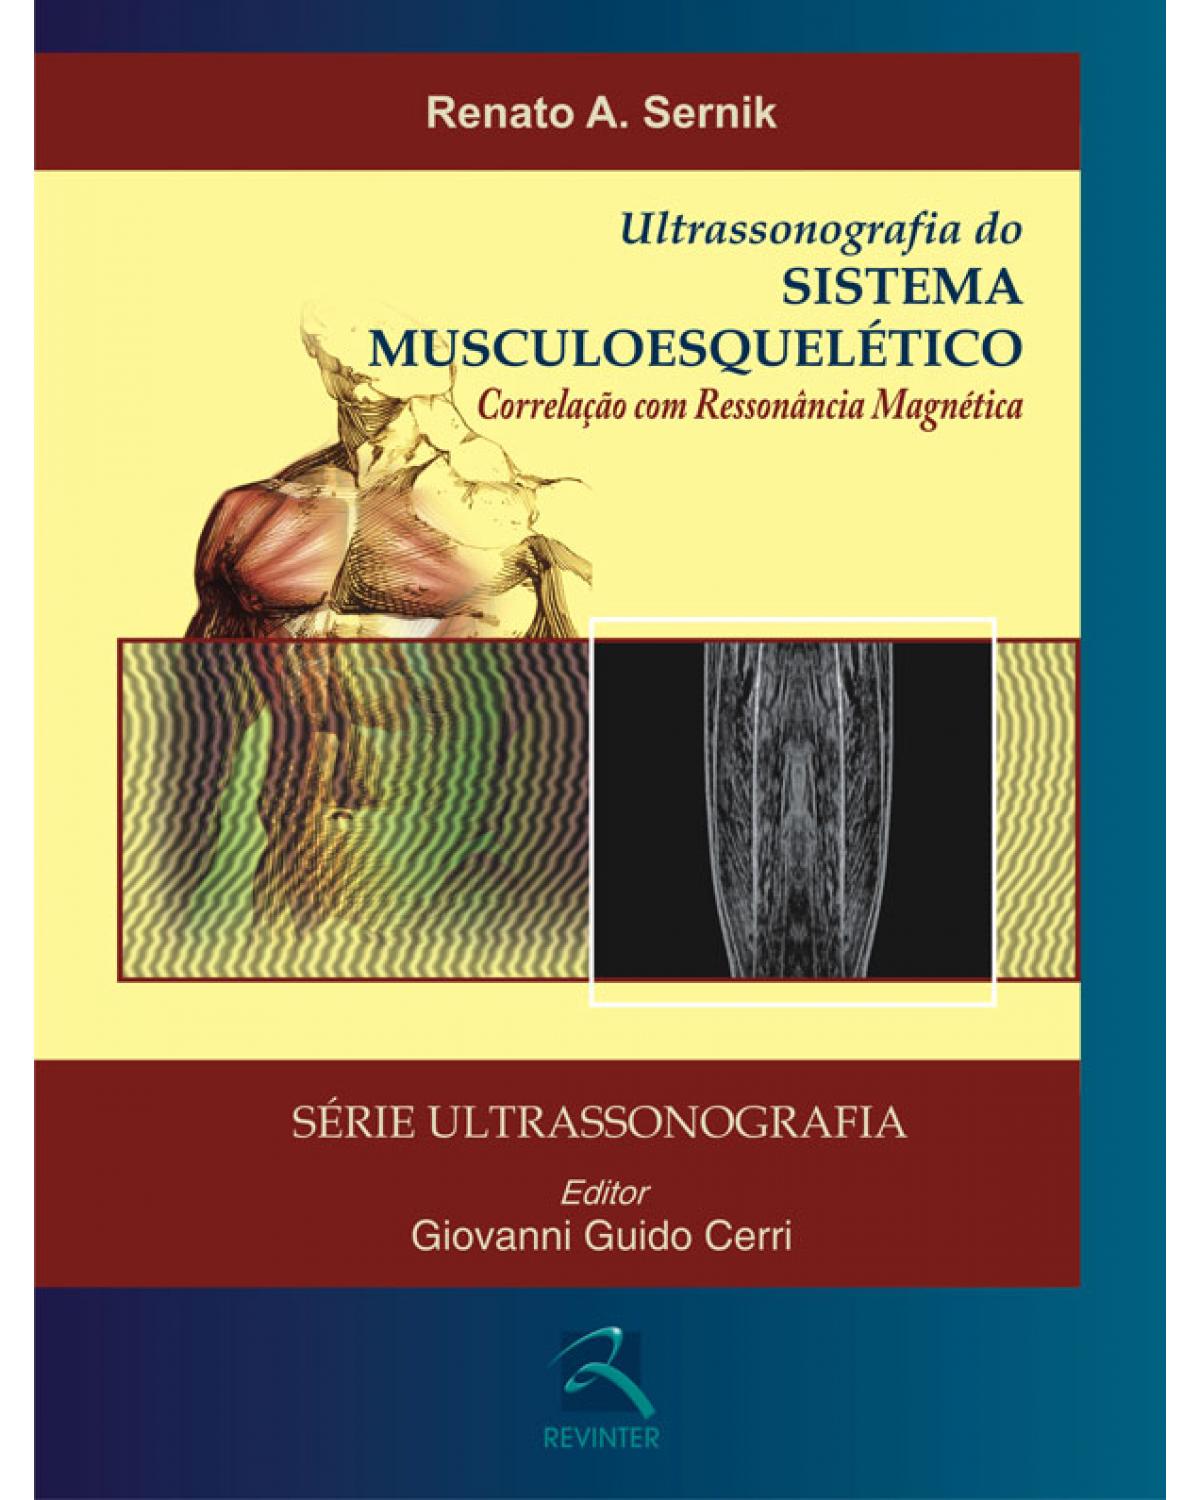 Ultrassonografia do sistema musculoesquelético - correlação com ressonância magnética - 1ª Edição | 2009